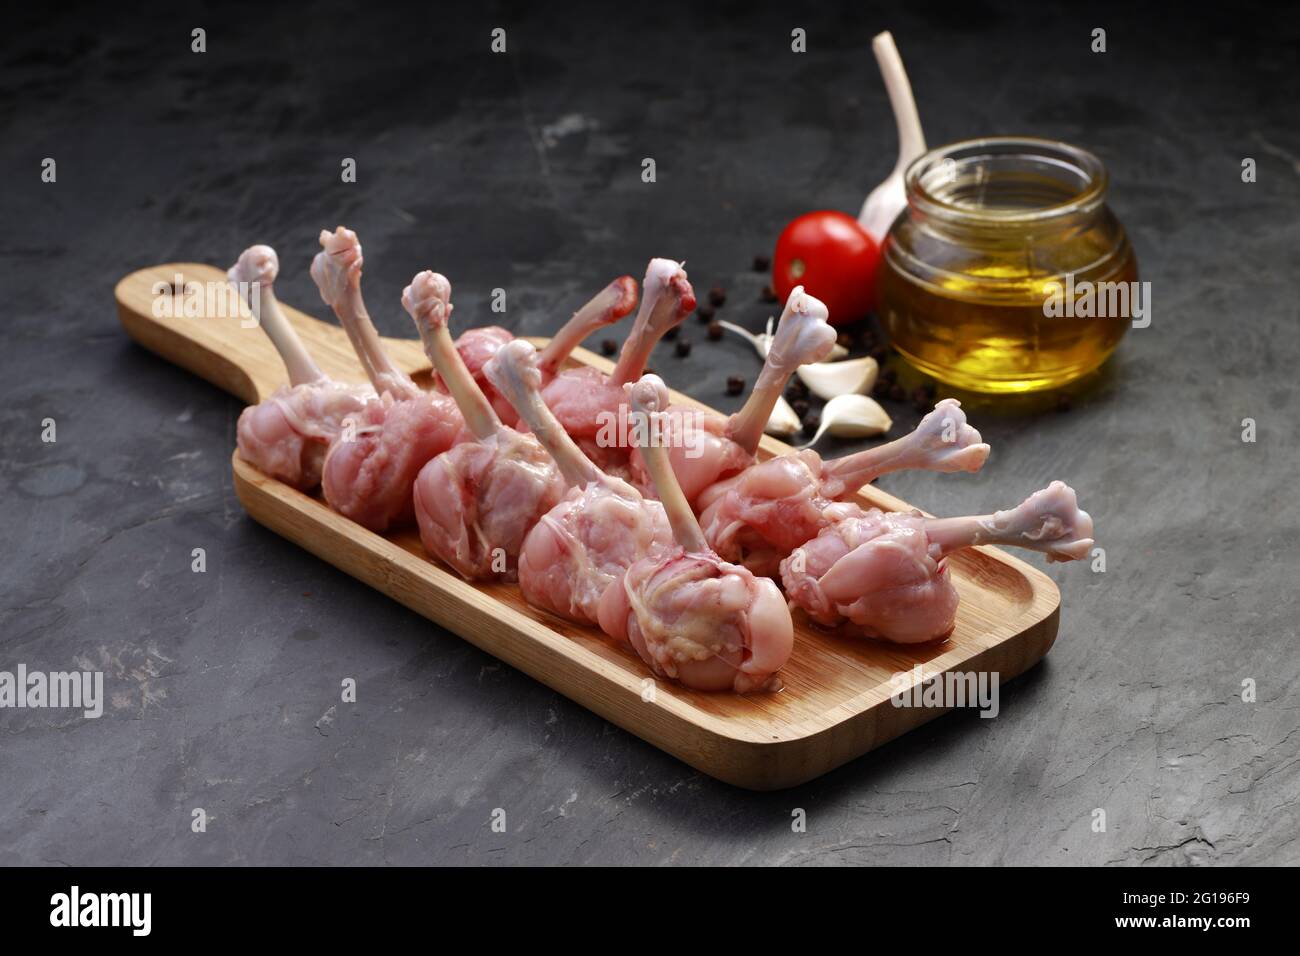 Roher Hühnerlollipop, zehn Stücke Hühnerlollipop auf einem Servierbrett mit Öl, Tomate und Knoblauch auf dem Hintergrund mit grauer strukturierter Basis angeordnet Stockfoto